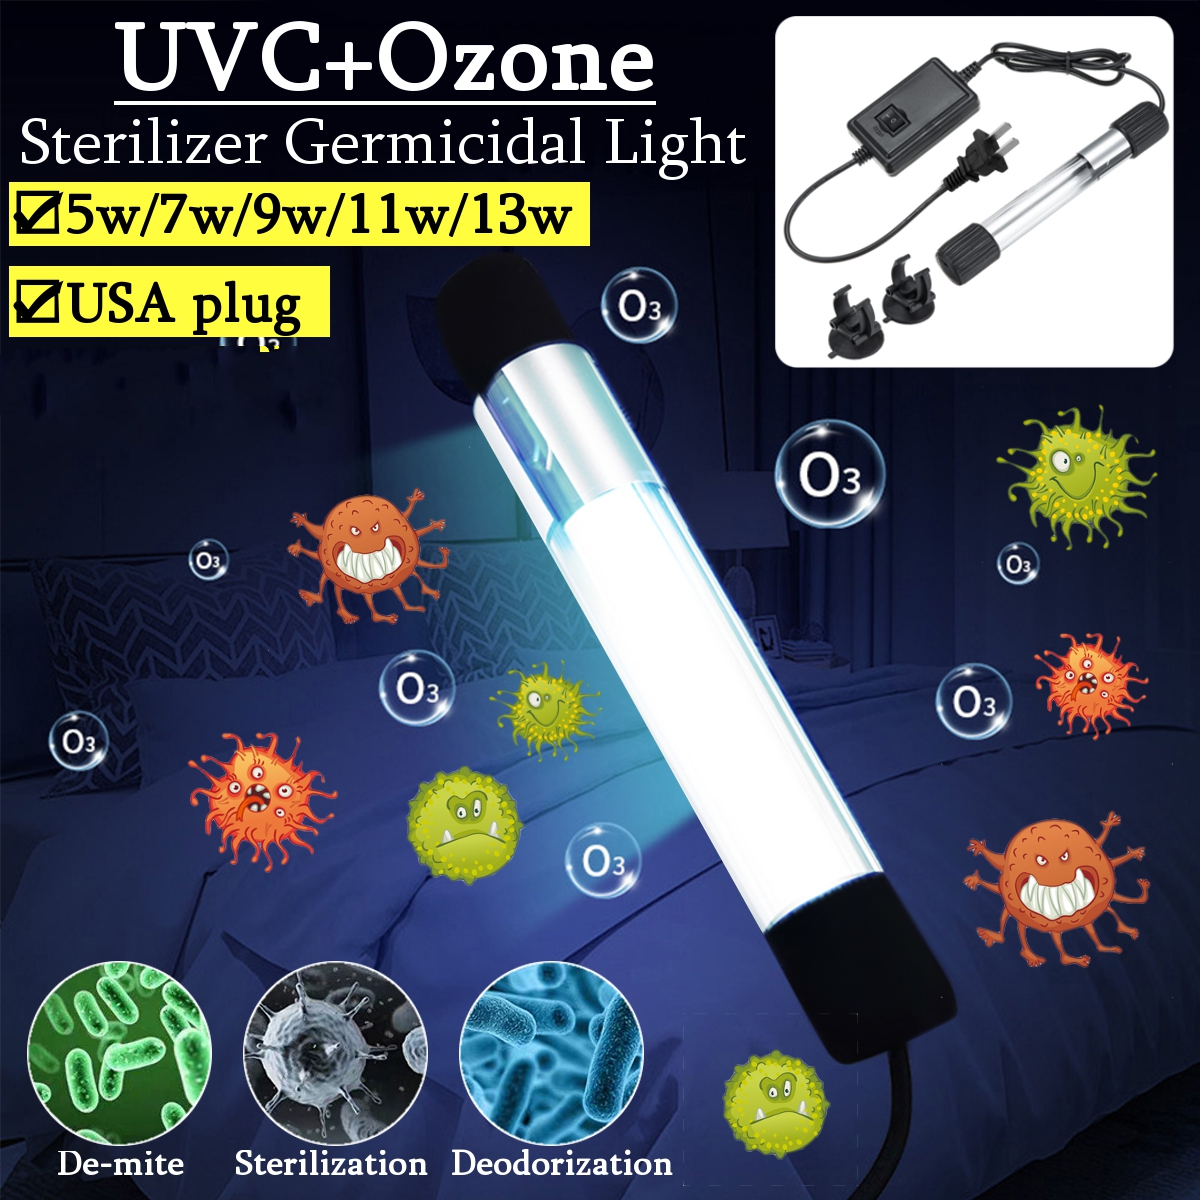 5W7W9W11W13W-UVC-Ozone-Germicidal-Lamp-Ultraviolet-Sterilizer-Disinfection-Tube-Light-US-Plug-AC110V-1688924-1